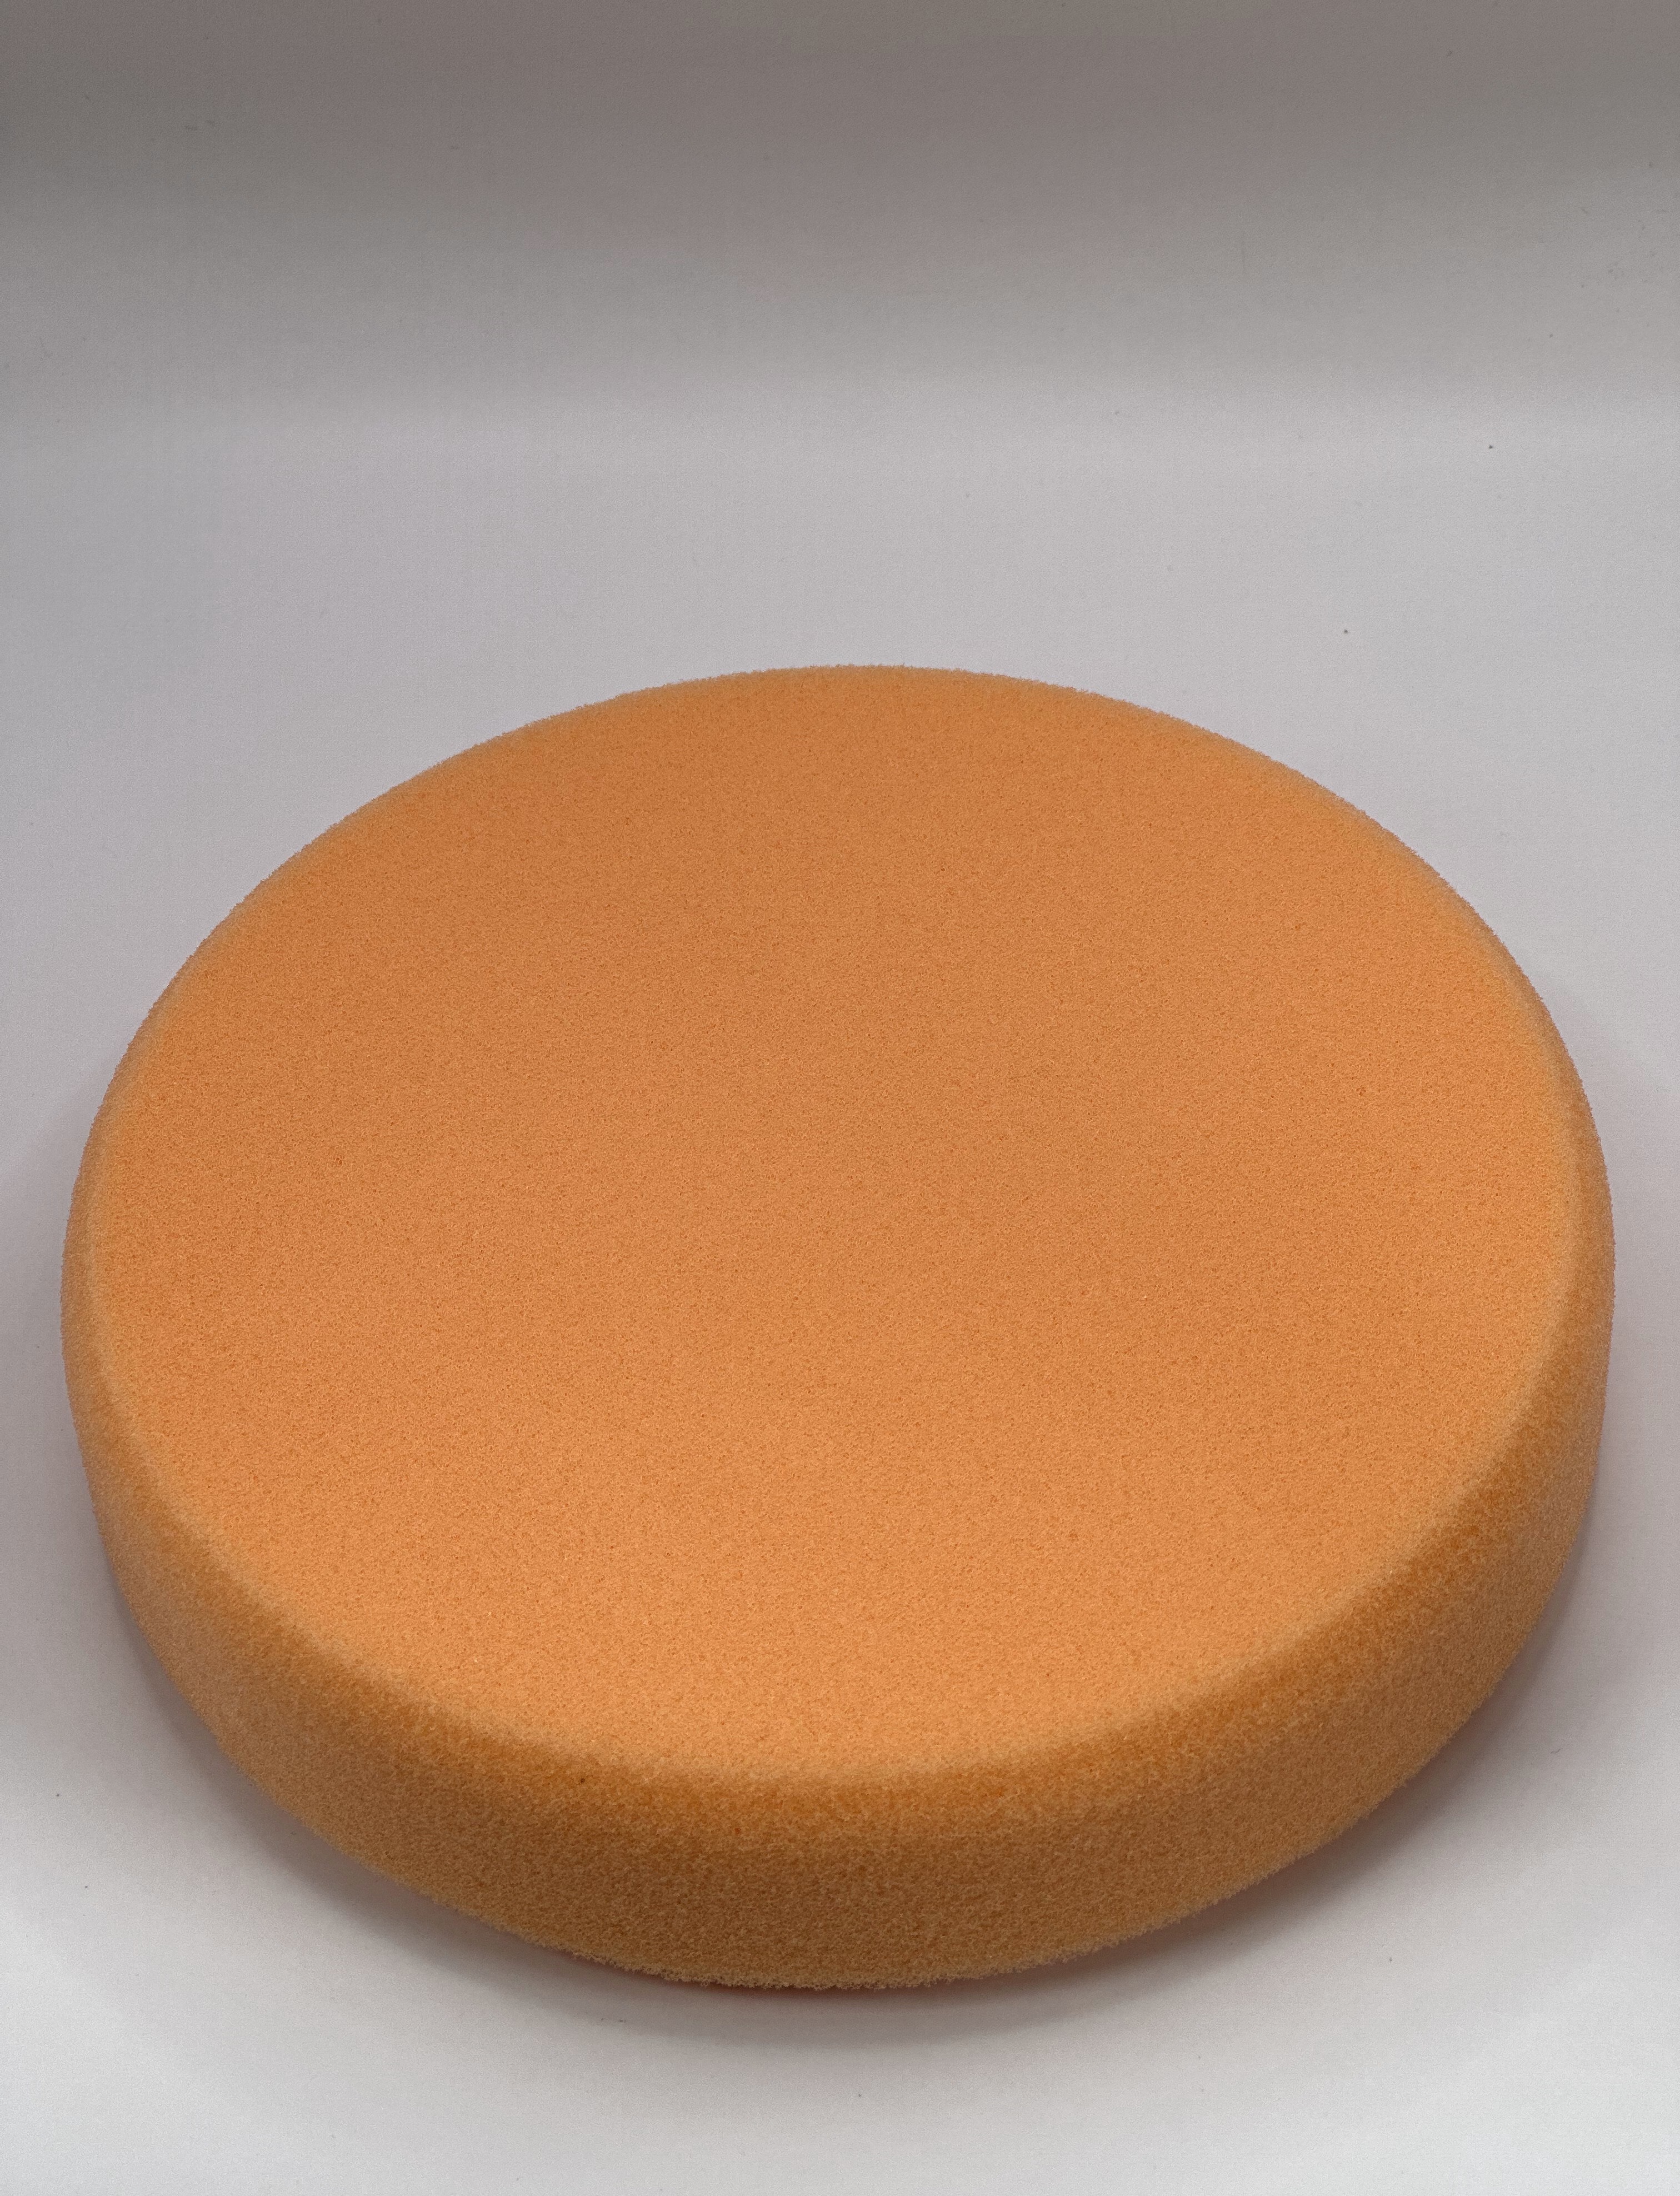 Диск Jeta Pro полировальный круг с гладкой поверхностью средней жесткости оранжевый 150 х 25 мм